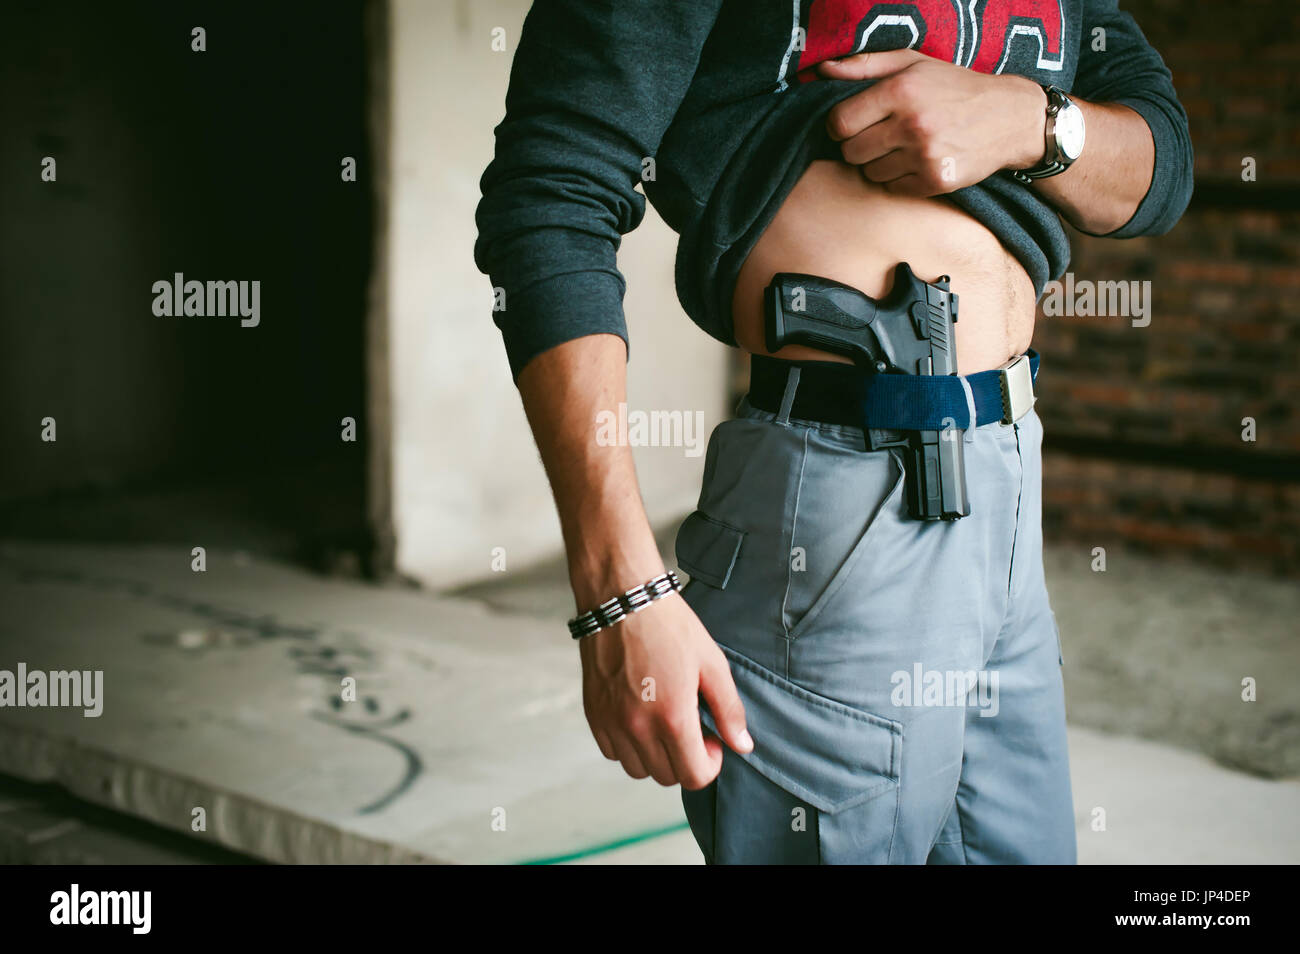 Jeune homme athlétique tenant un pistolet derrière sa ceinture Photo Stock  - Alamy